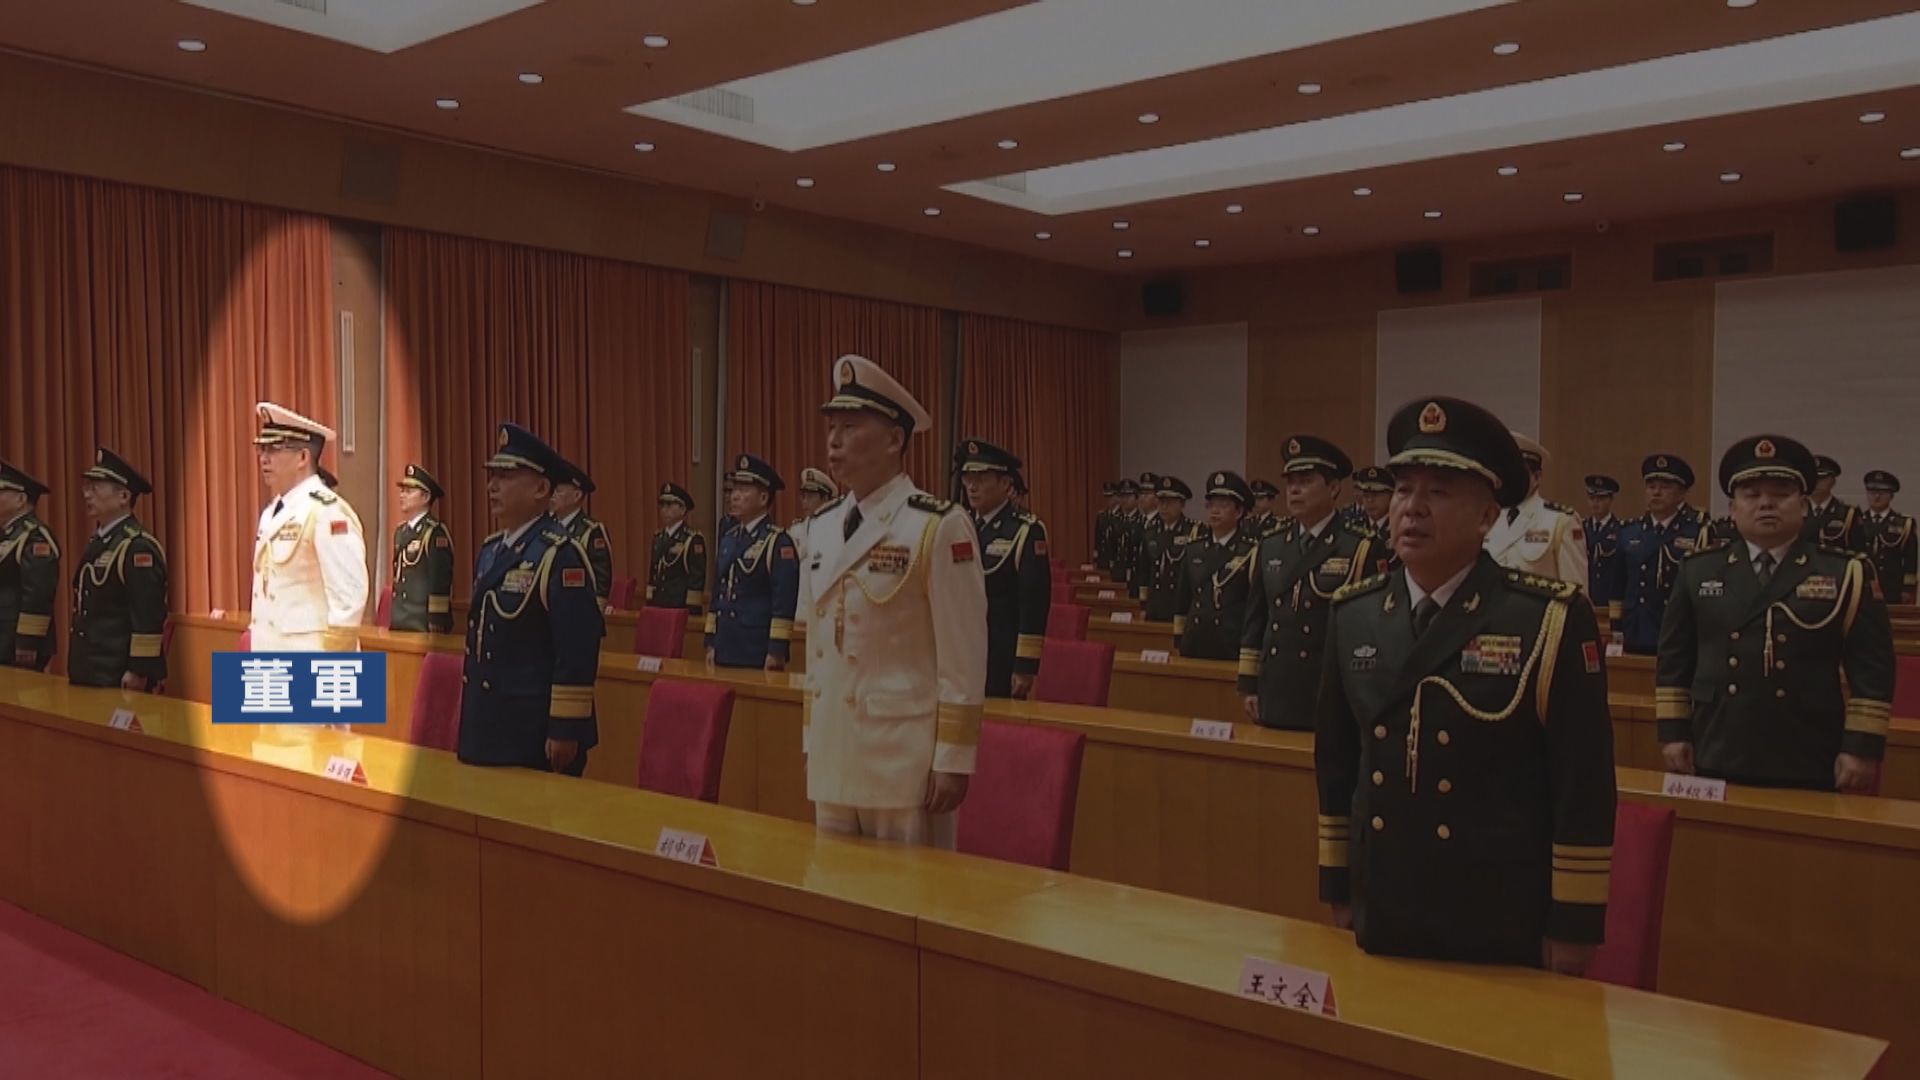 董軍獲任命為國防部長 曾擔任海軍司令員逾兩年